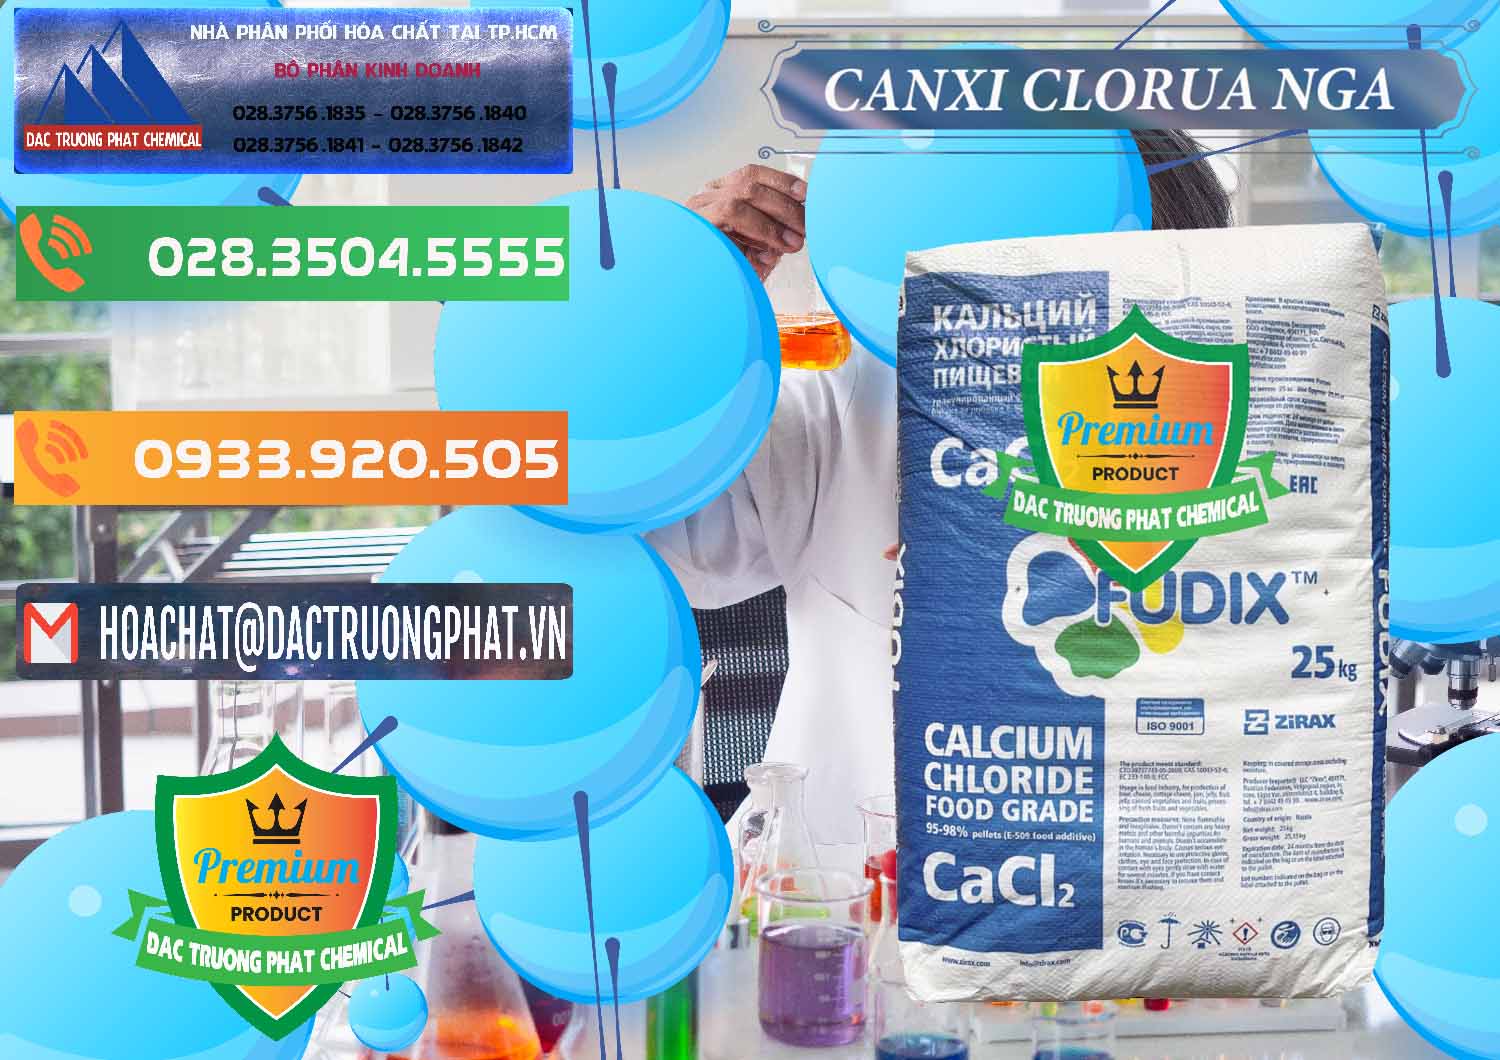 Cty cung cấp - bán CaCl2 – Canxi Clorua Nga Russia - 0430 - Công ty kinh doanh - phân phối hóa chất tại TP.HCM - hoachatxulynuoc.com.vn